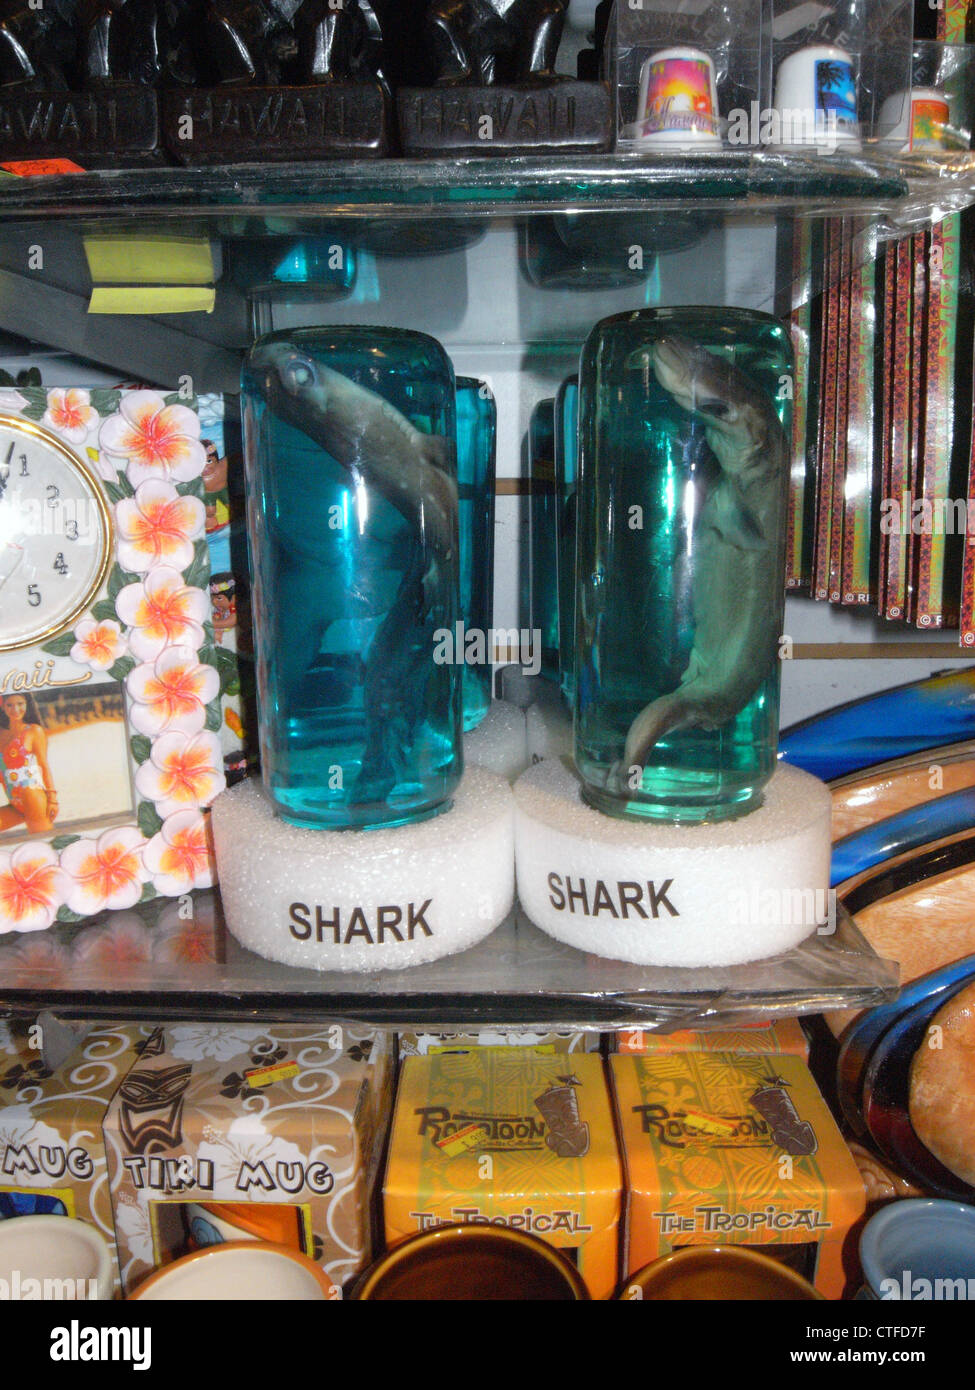 Baby squali conservate in alcole disponibile per la vendita in un negozio di souvenir, Waikiki, Honolulu, Stati Uniti d'America Foto Stock